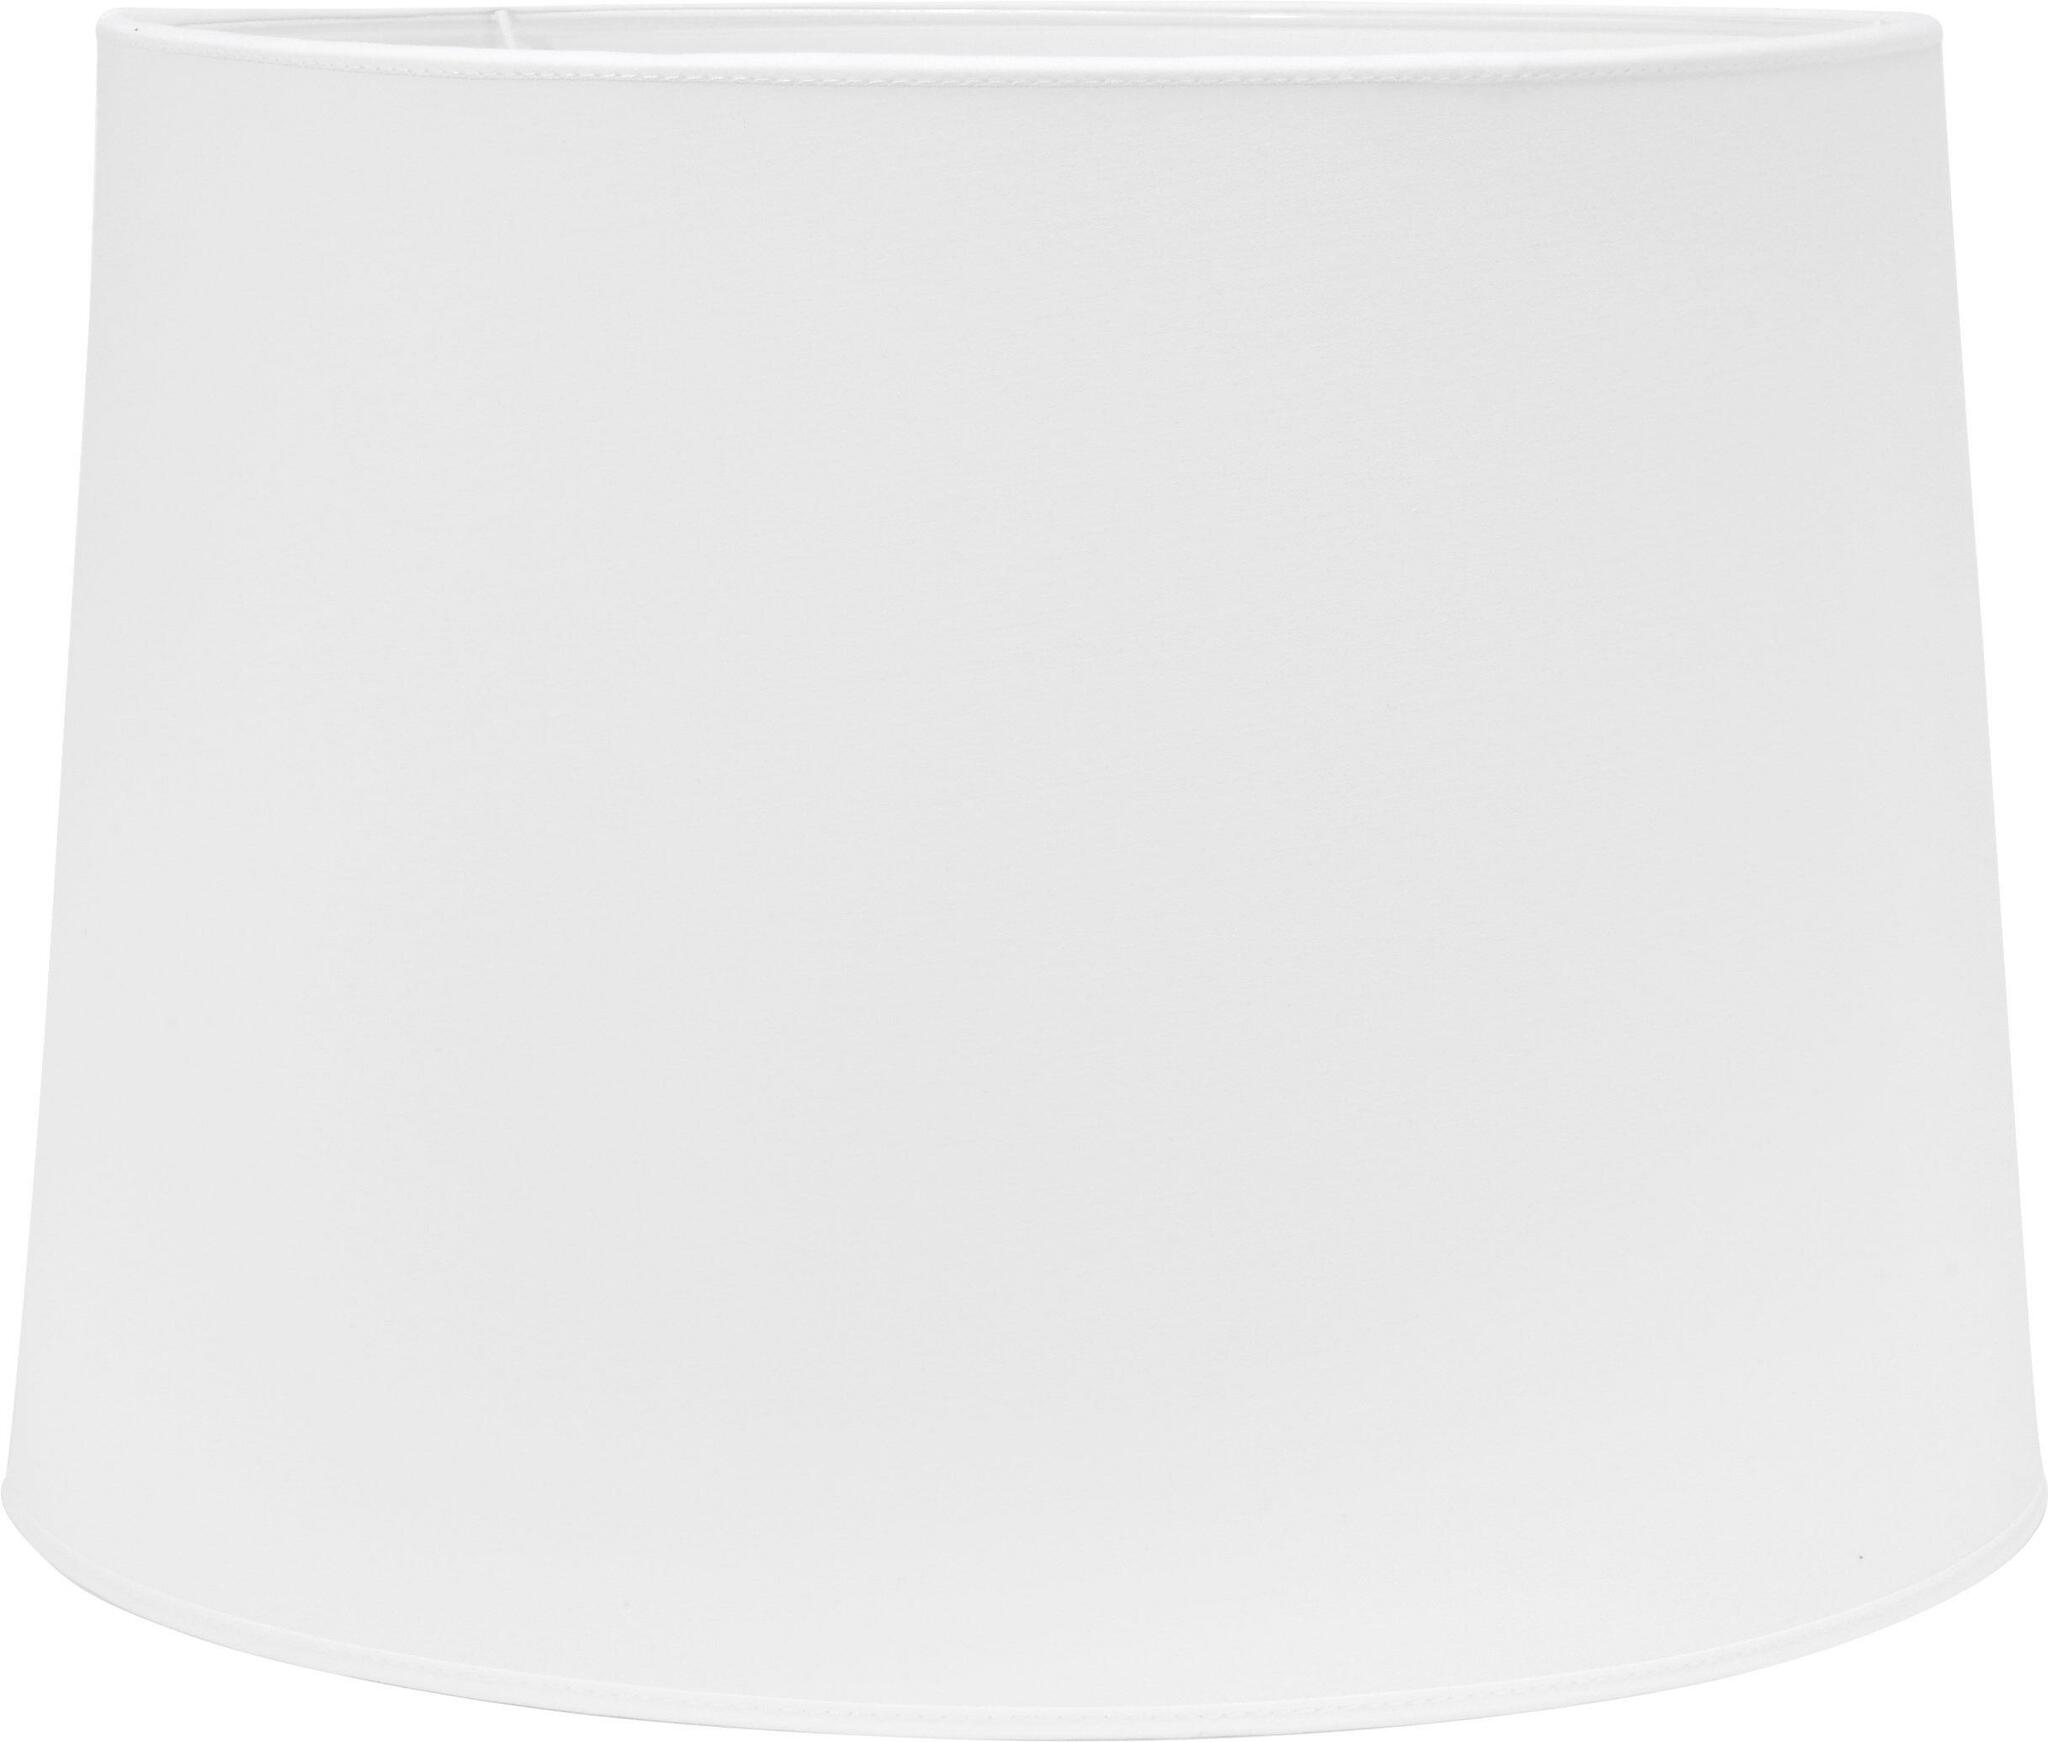 Sofia bas är en vit rund lampskärm från PR HOME, mått dia 20, dia 17, h 15,6 cm.